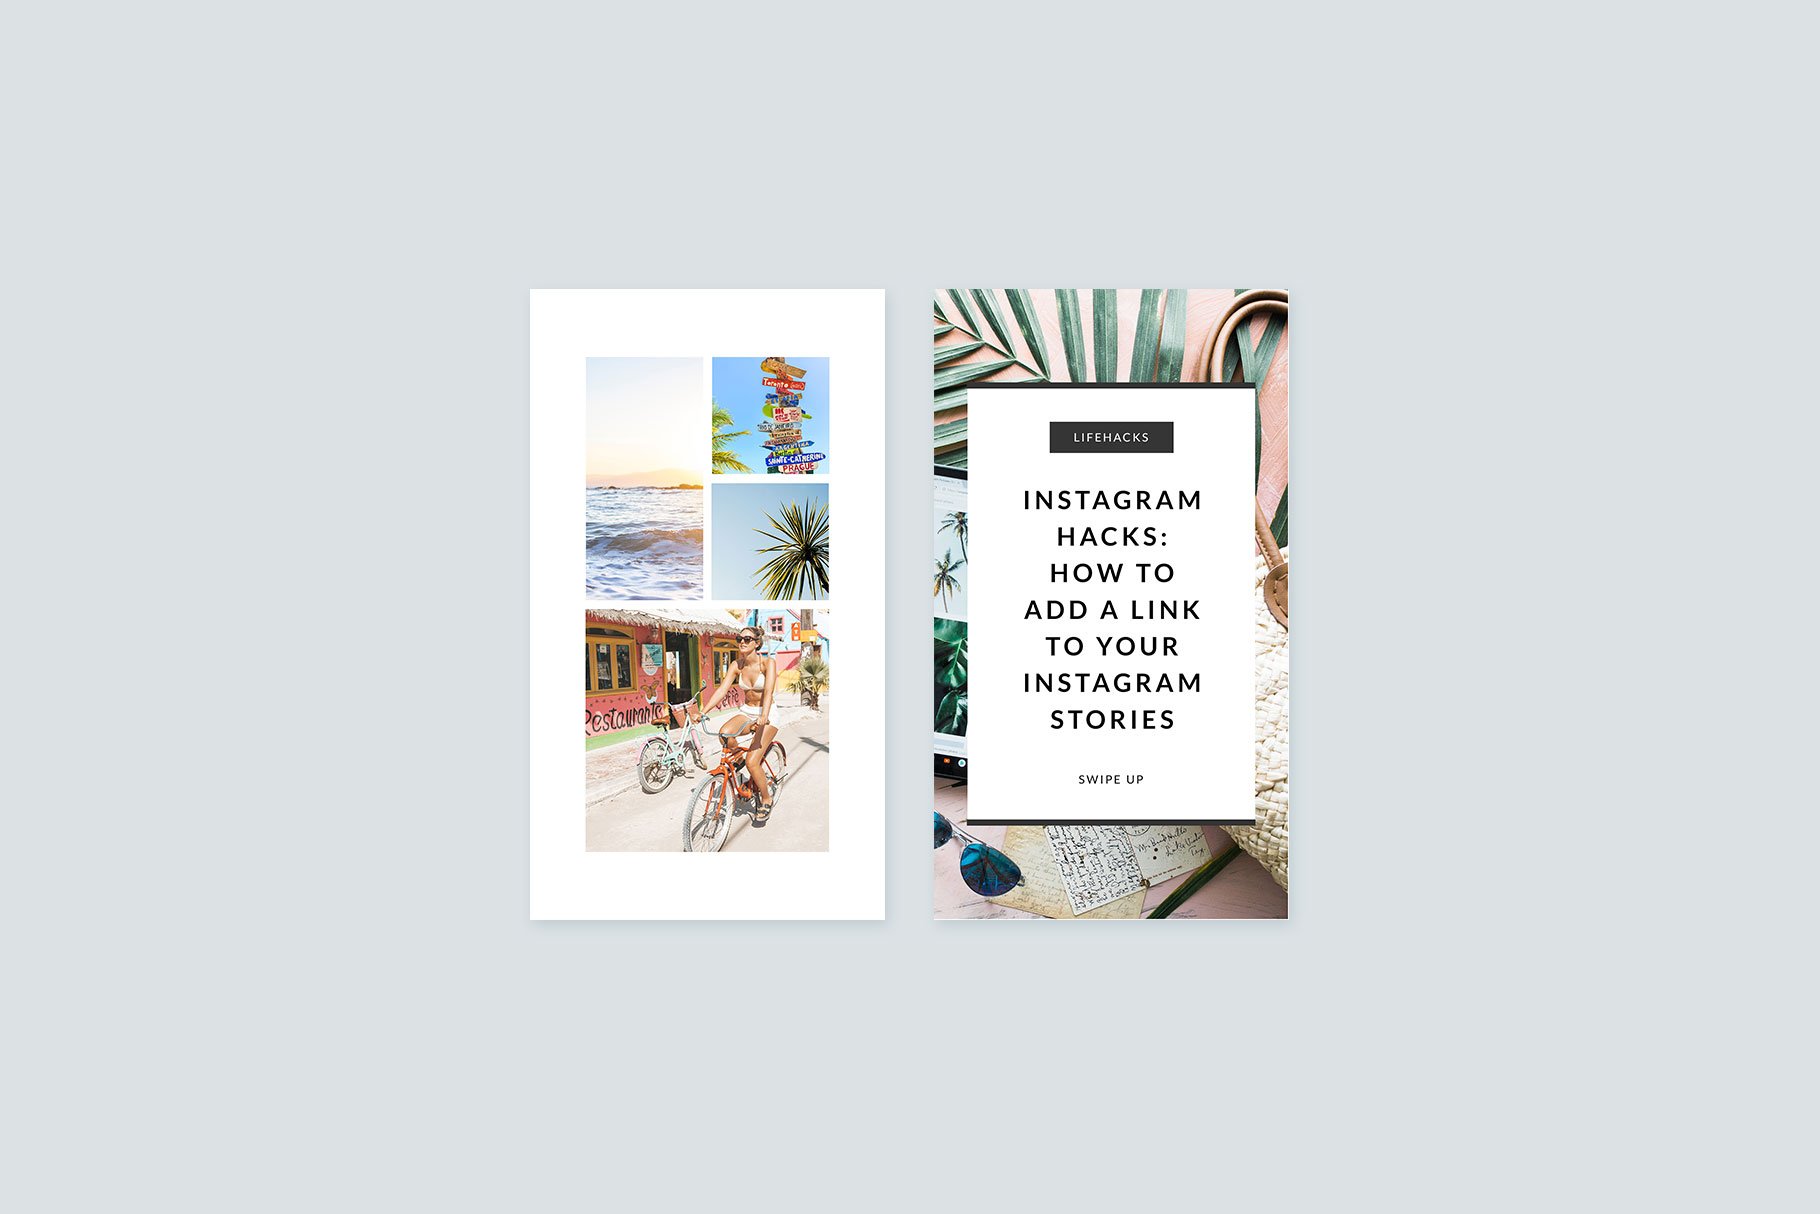 Instagram Stories Starter Pack